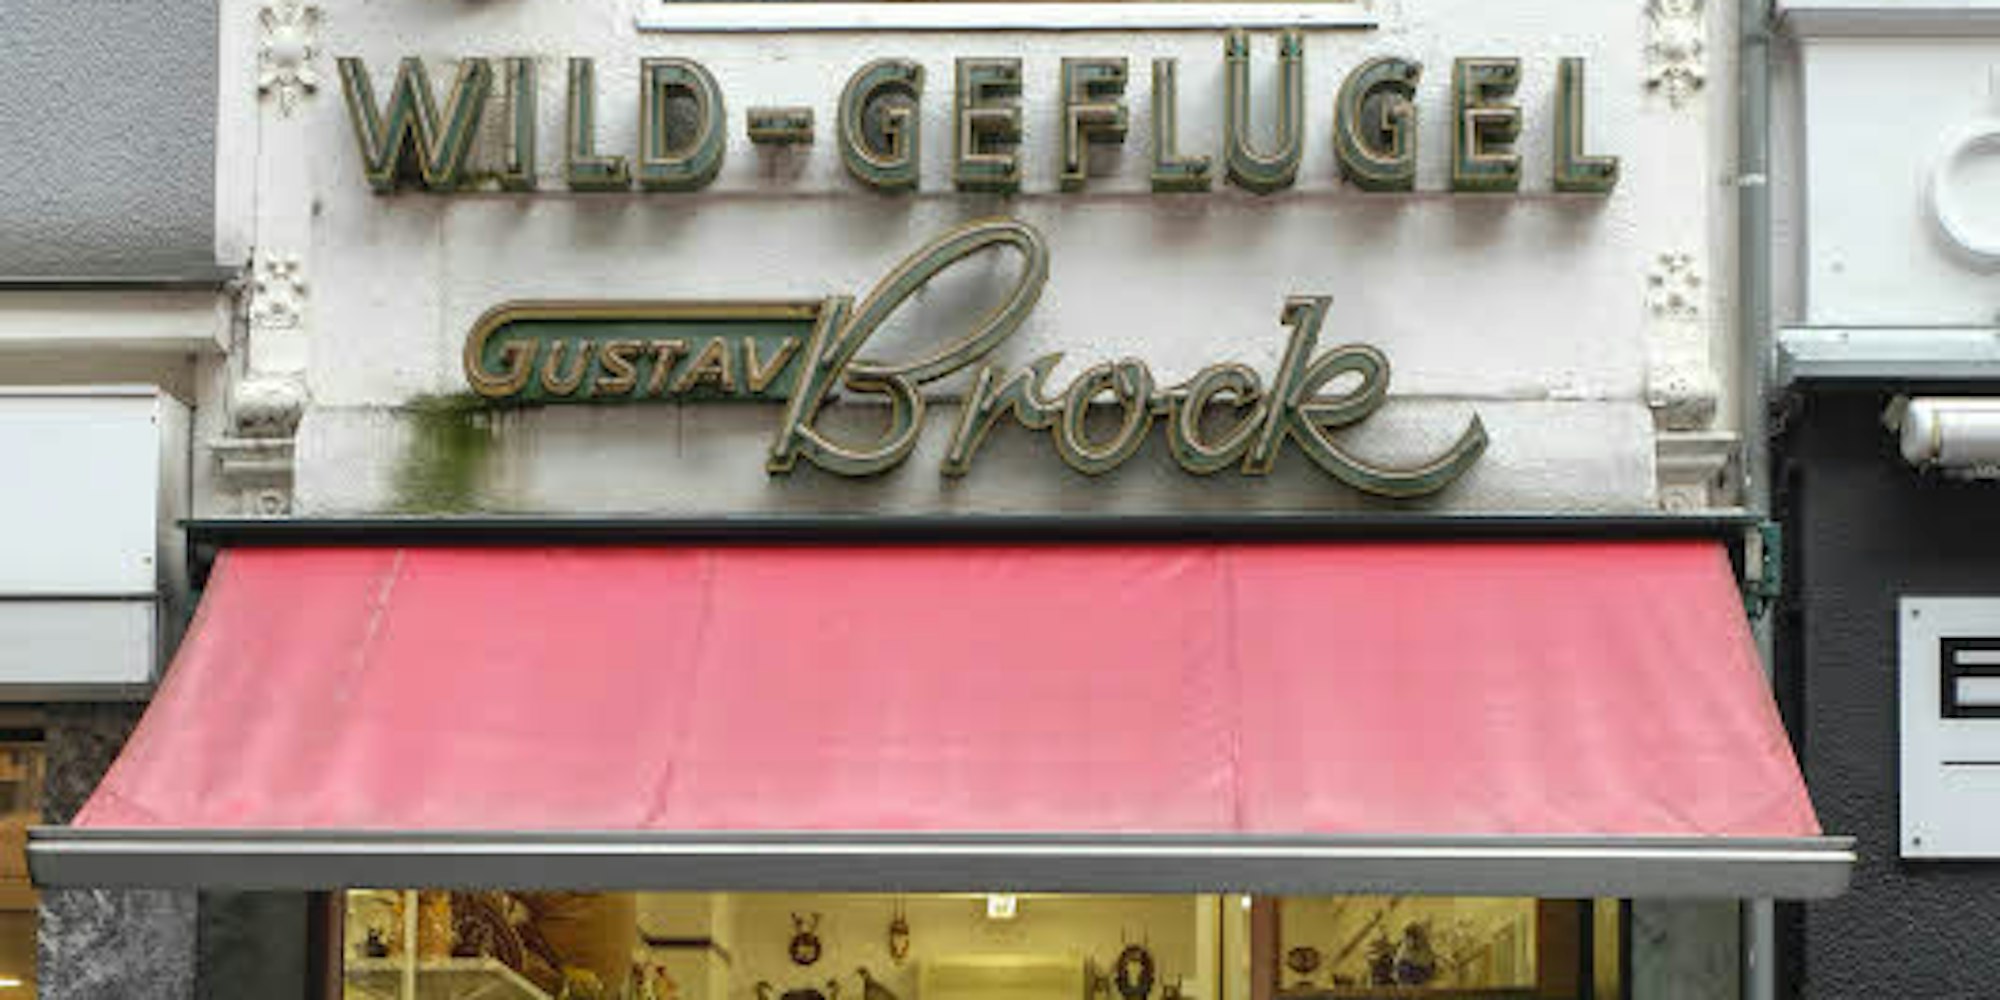 Das Geschäft in der Apostelnstraße gibt es seit 111 Jahren. Es wird von Rochow in der vierten Generation geführt.